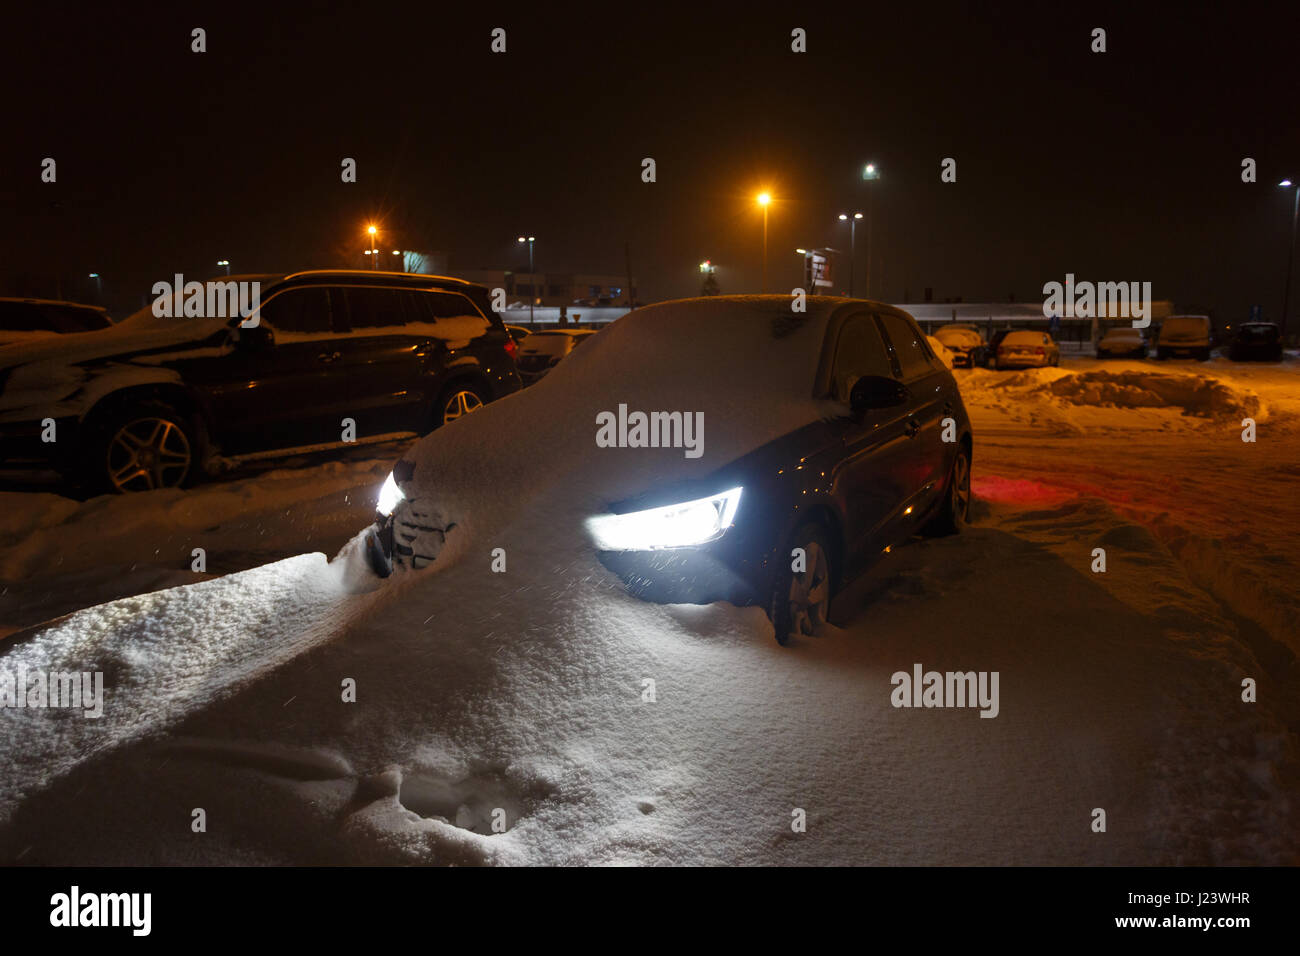 Macchina bloccata nel cumulo di neve di notte Foto Stock